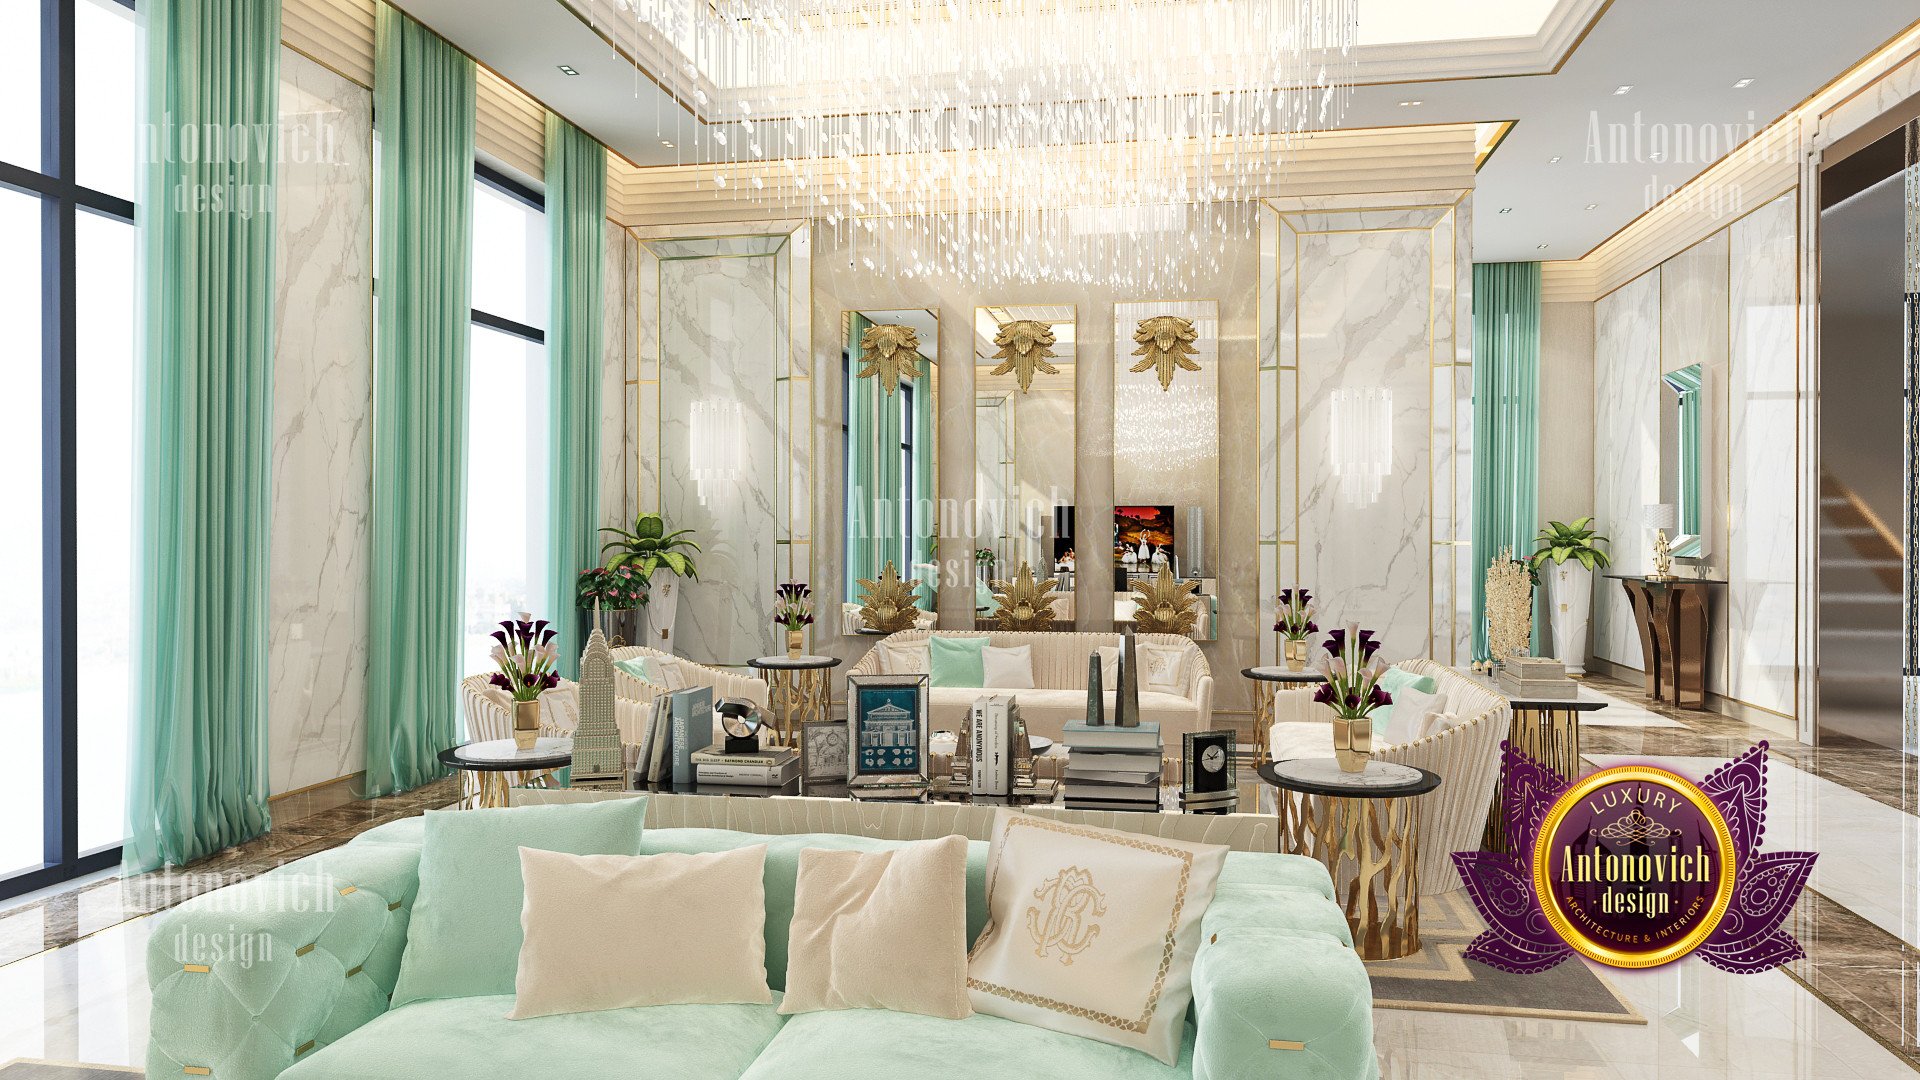 Amazing Luxury Villa Designs in San Francisco
